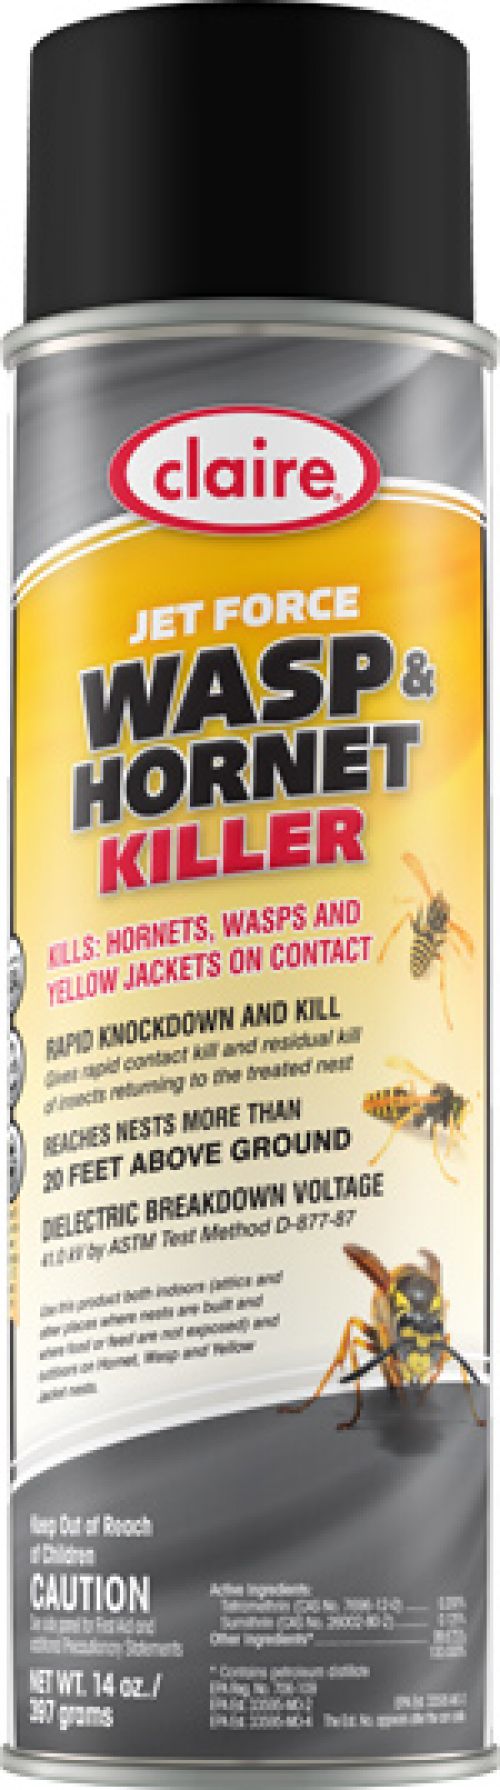 JET FORCE Wasp & Hornet killer